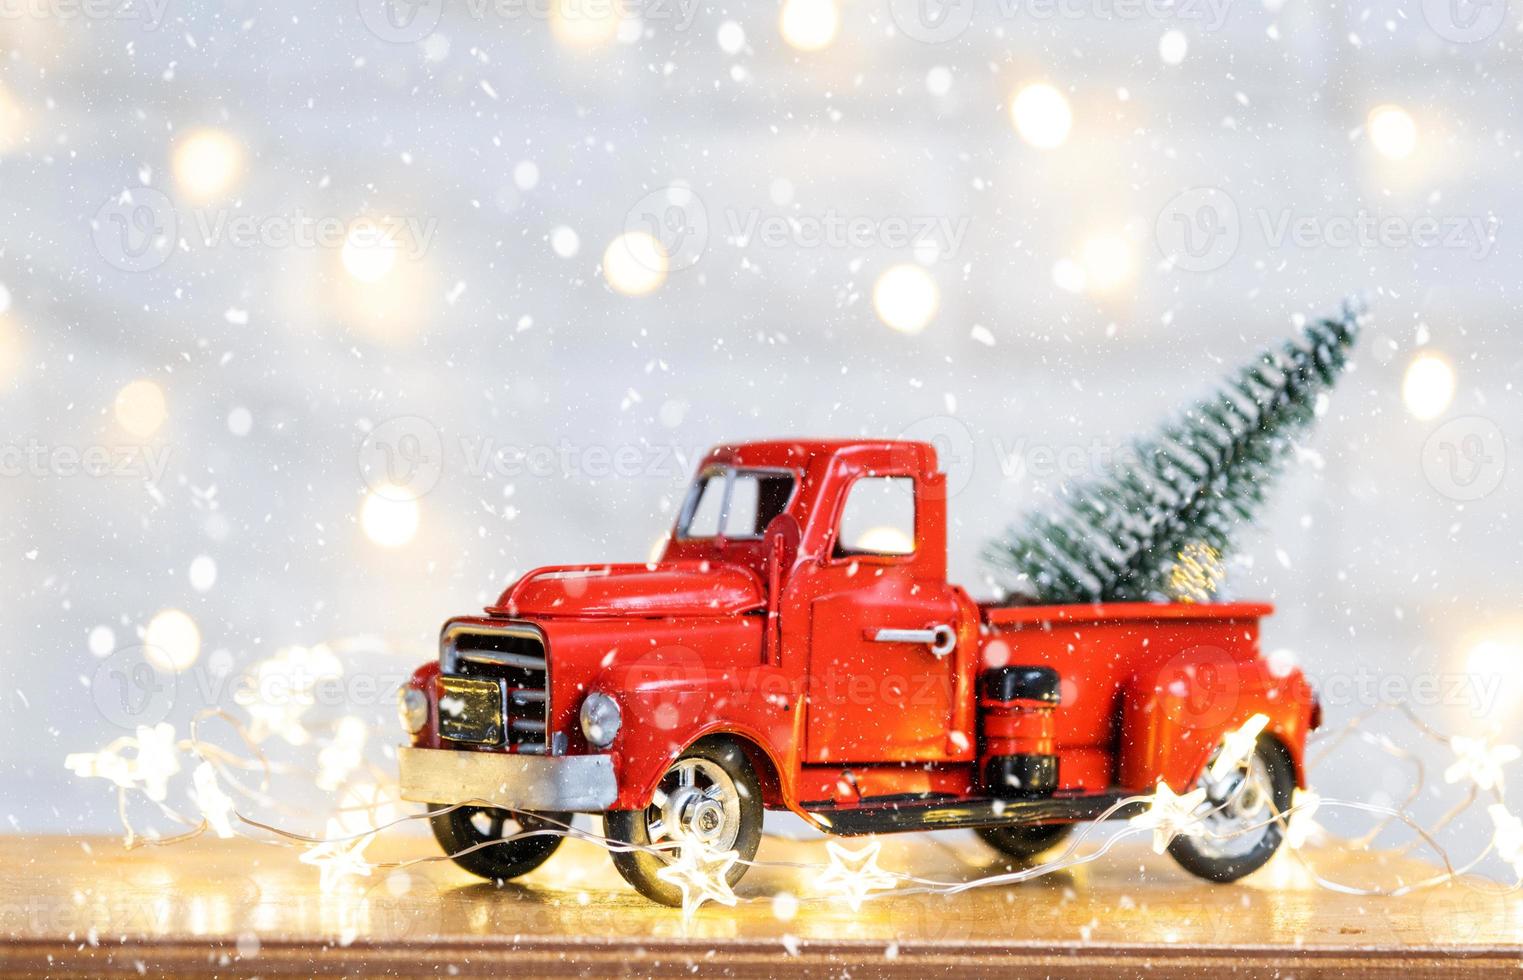 décoration de noël camionnette de voiture rétro rouge sur la neige avec des guirlandes lumineuses dans l'arbre de noël bokeh. carte de voeux de nouvel an. maison confortable photo